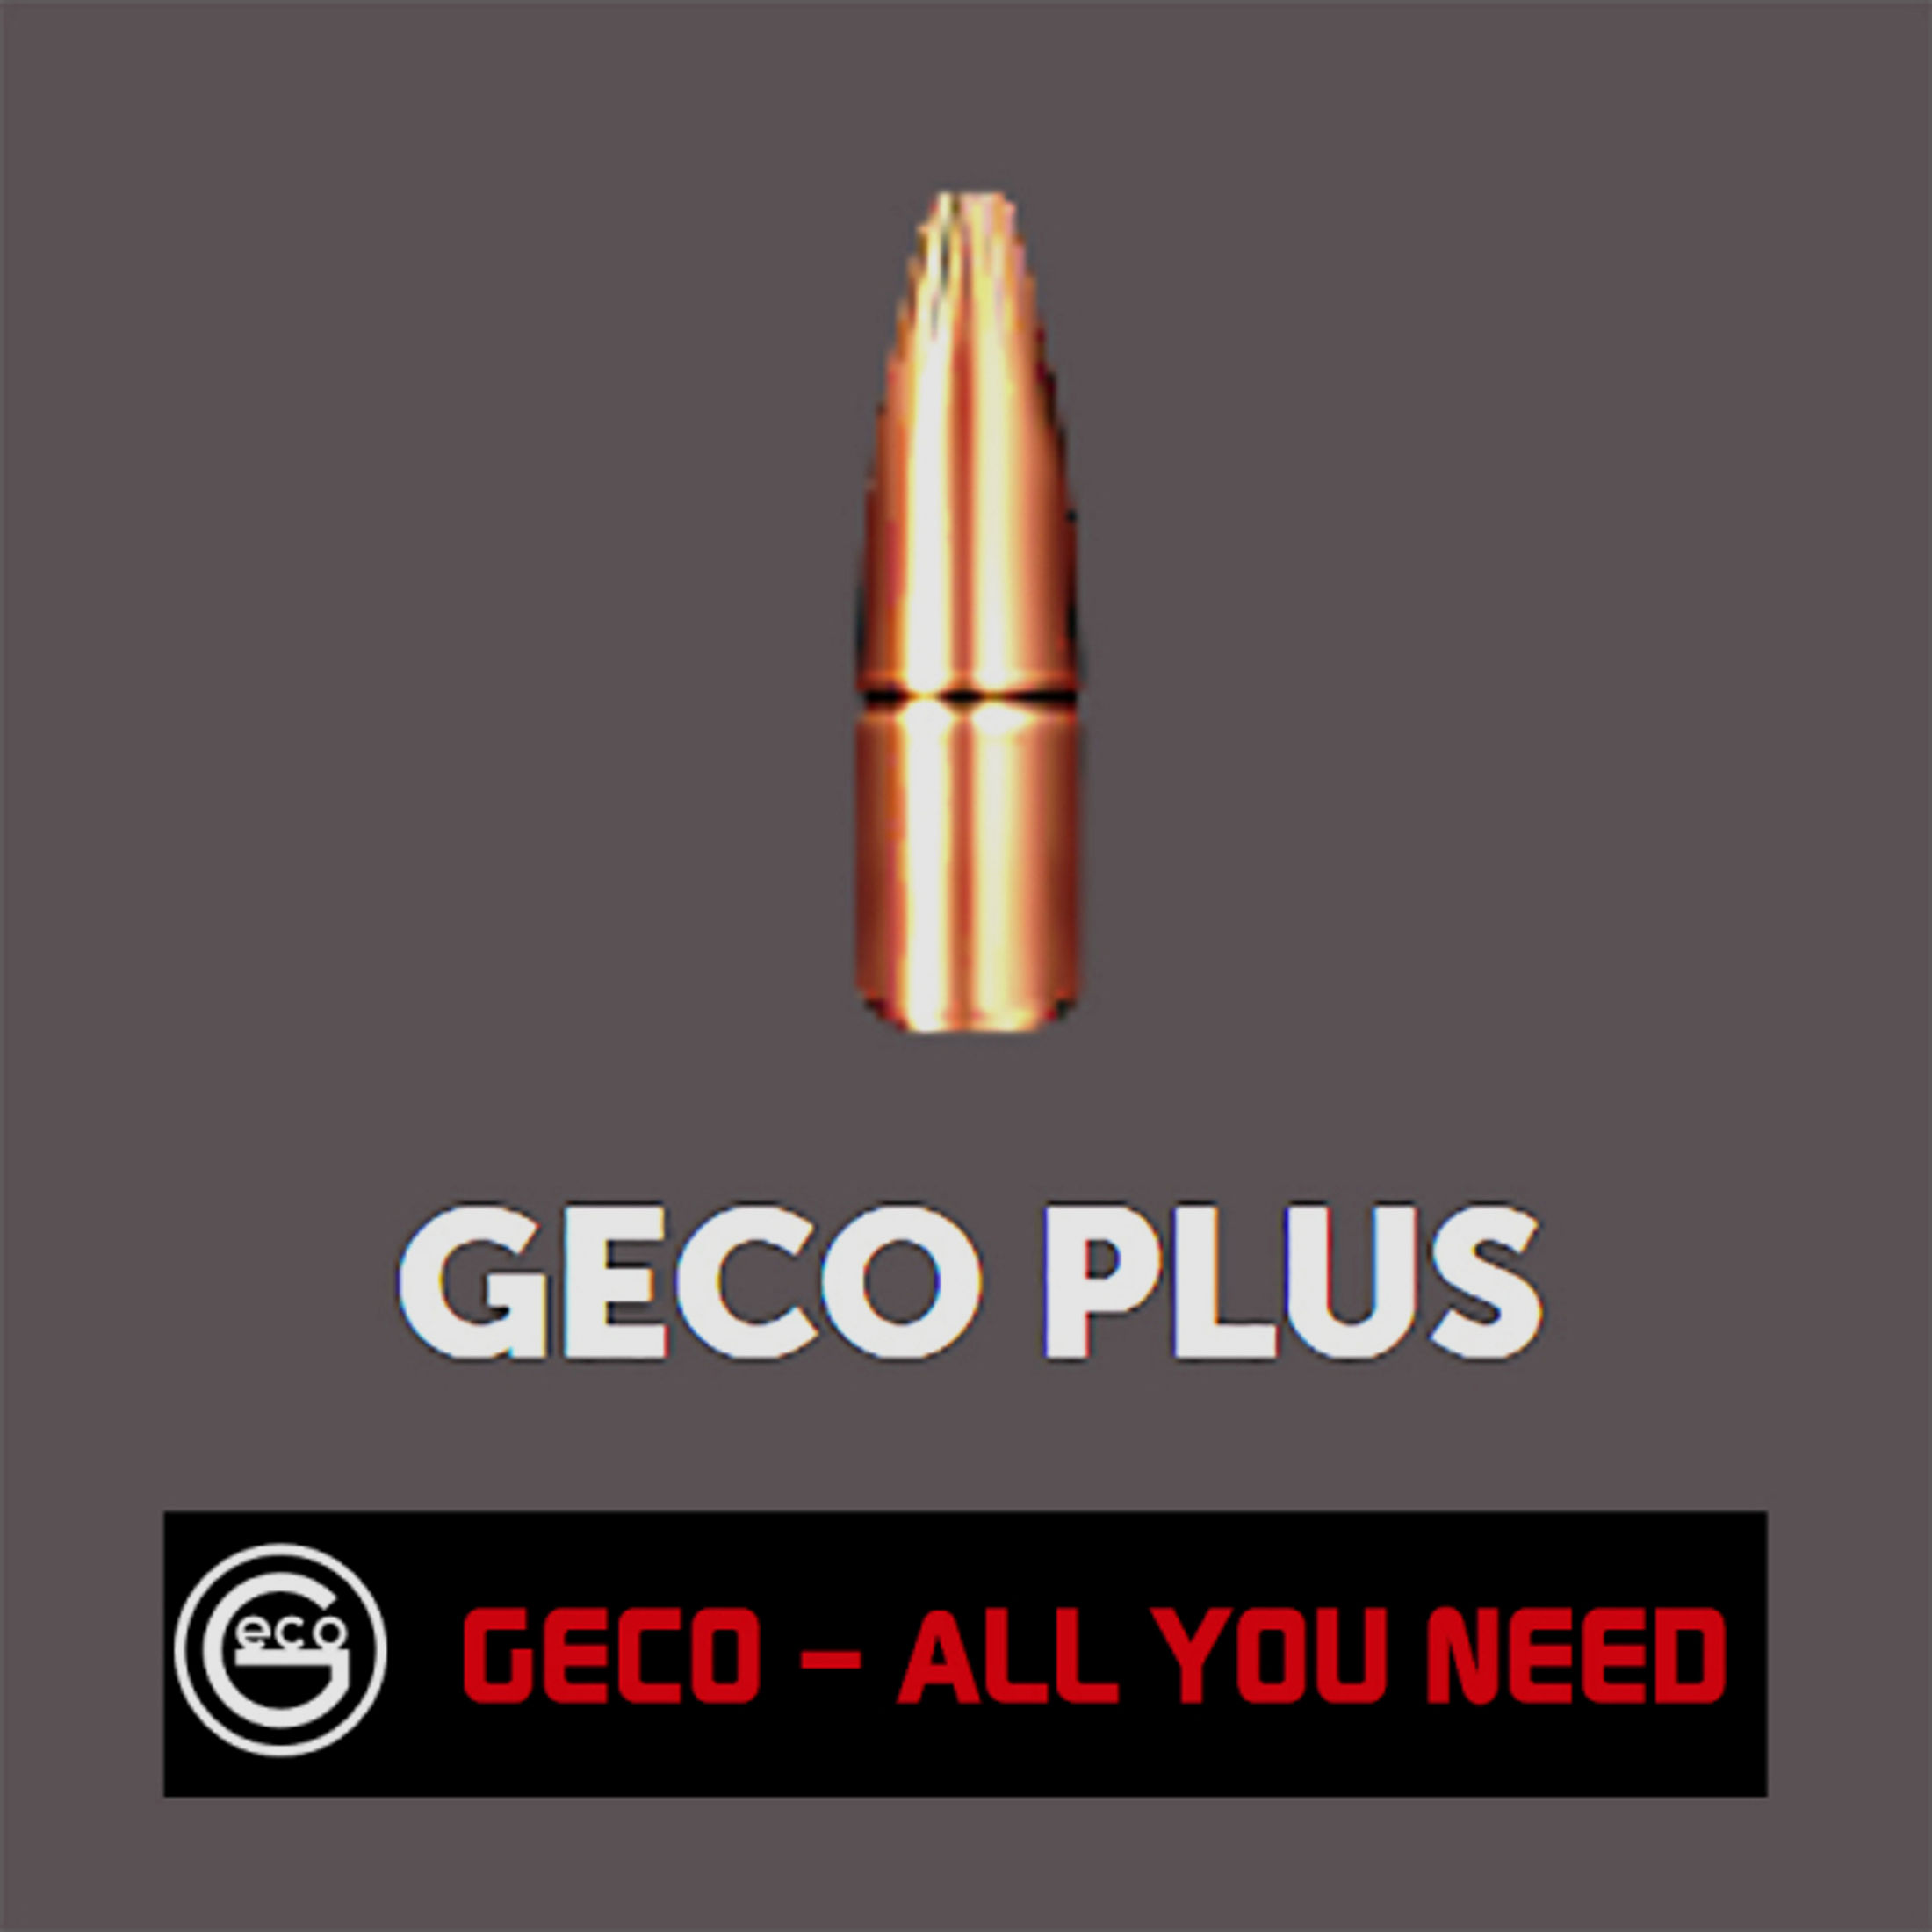 50 Stück NEUE GECO Geschosse - PLUS JAGD Deformationsgeschoss 6,5mm / .264 - 10,1g / 165gr #2318562